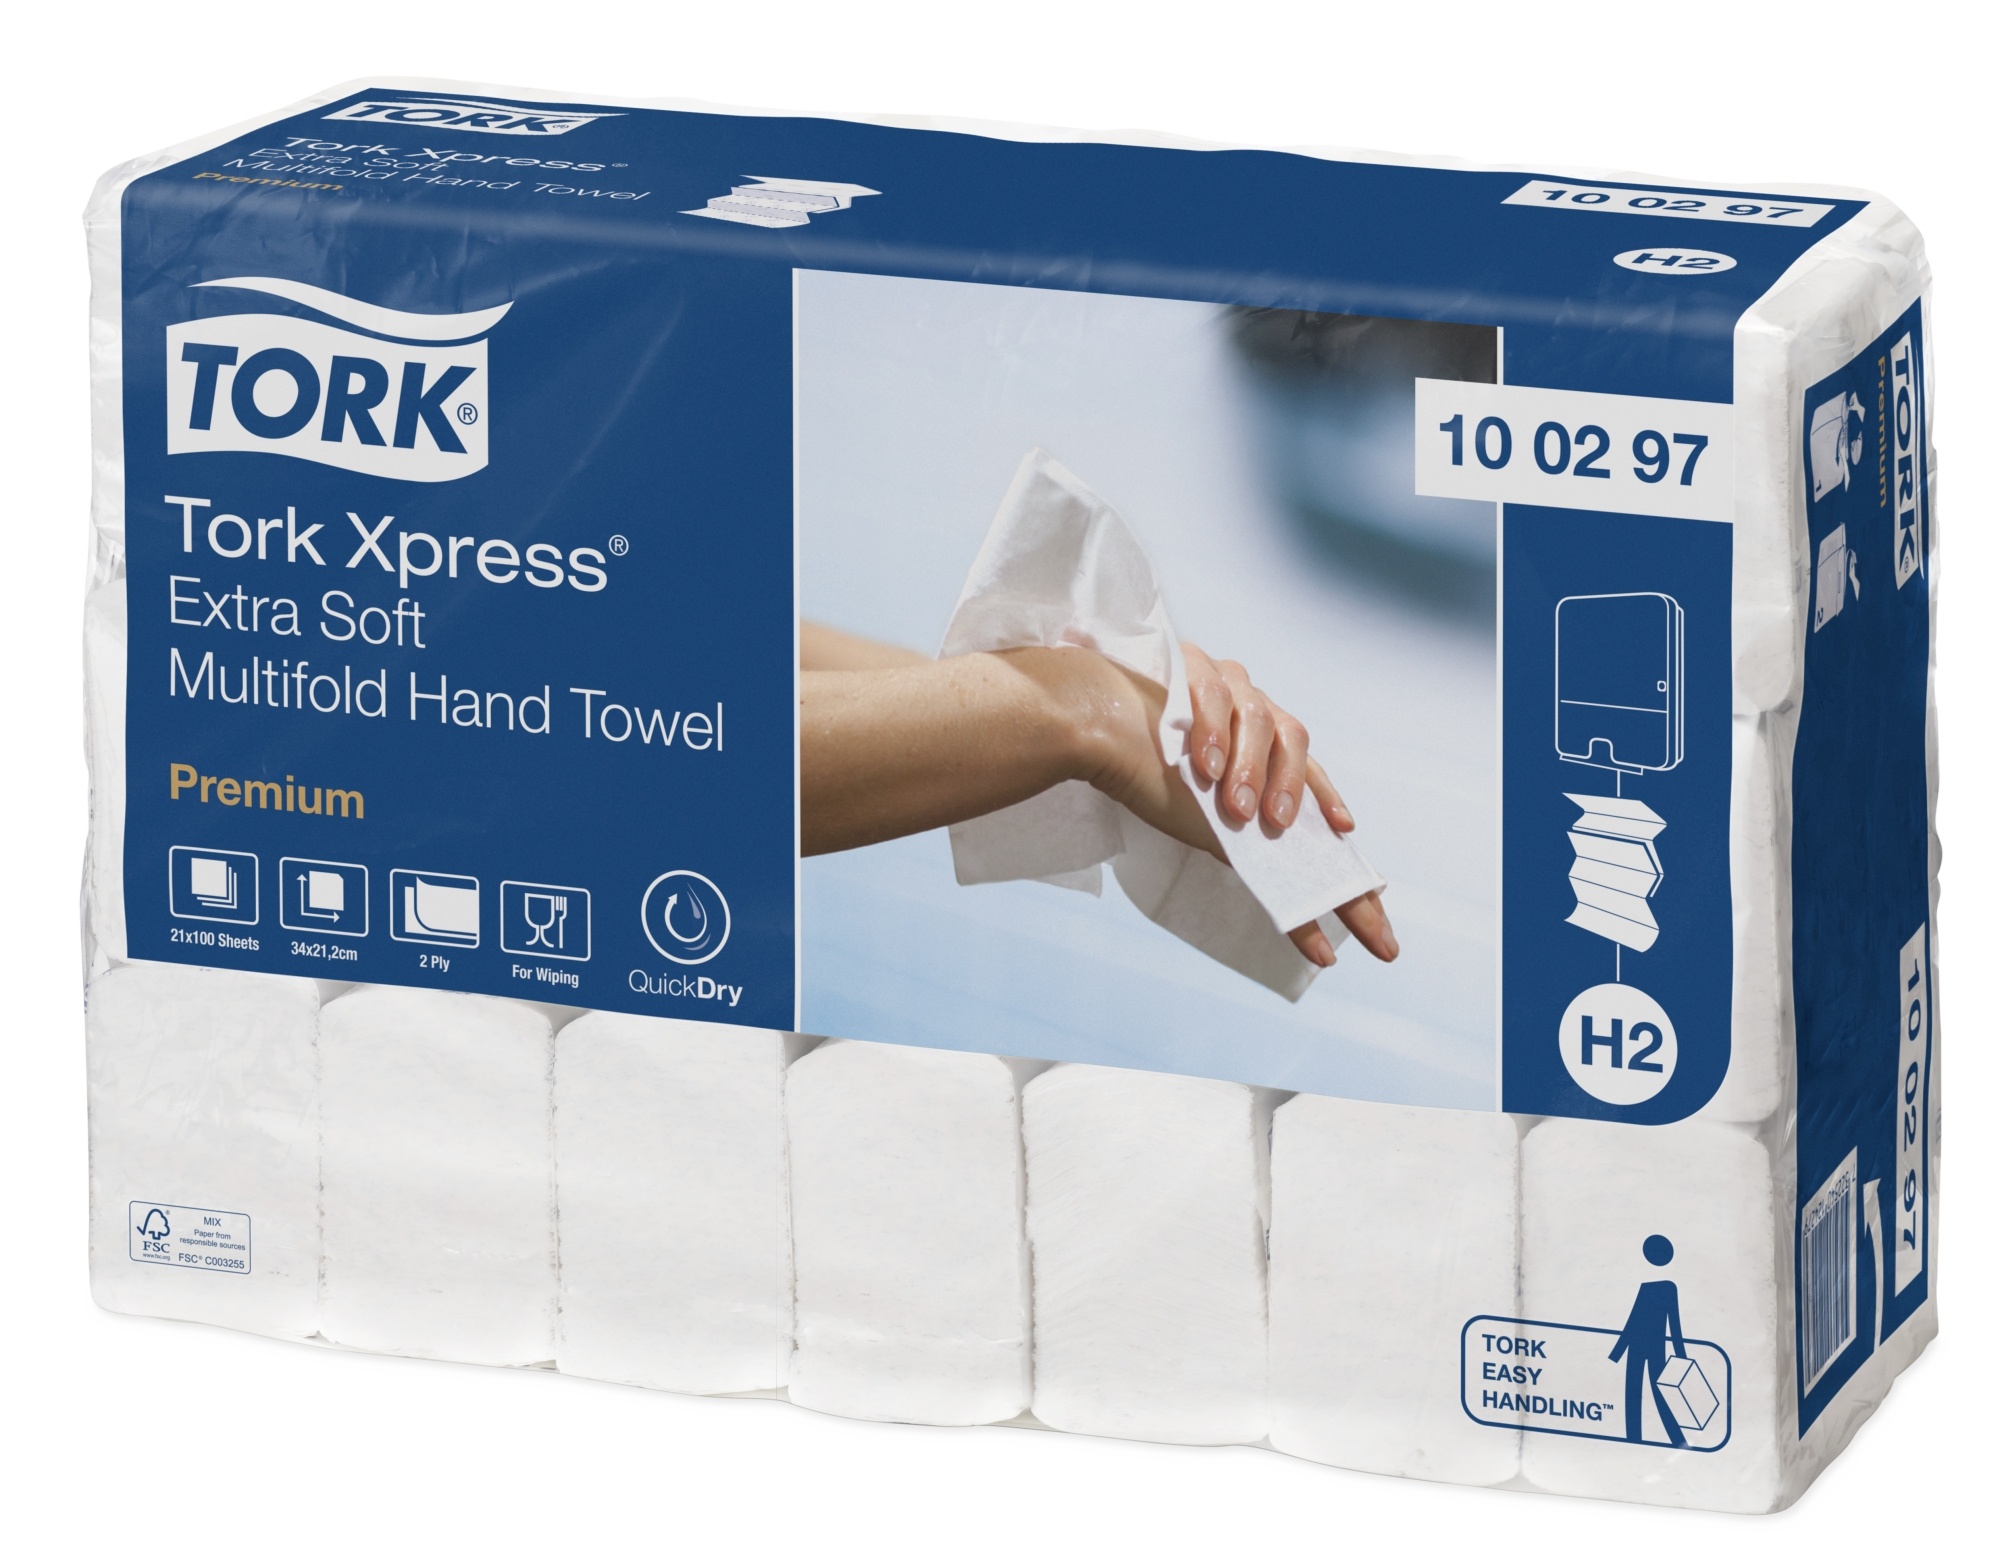  Tork Xpress® ekstra miękki ręcznik Multifold w składce wielopanelowej  100297